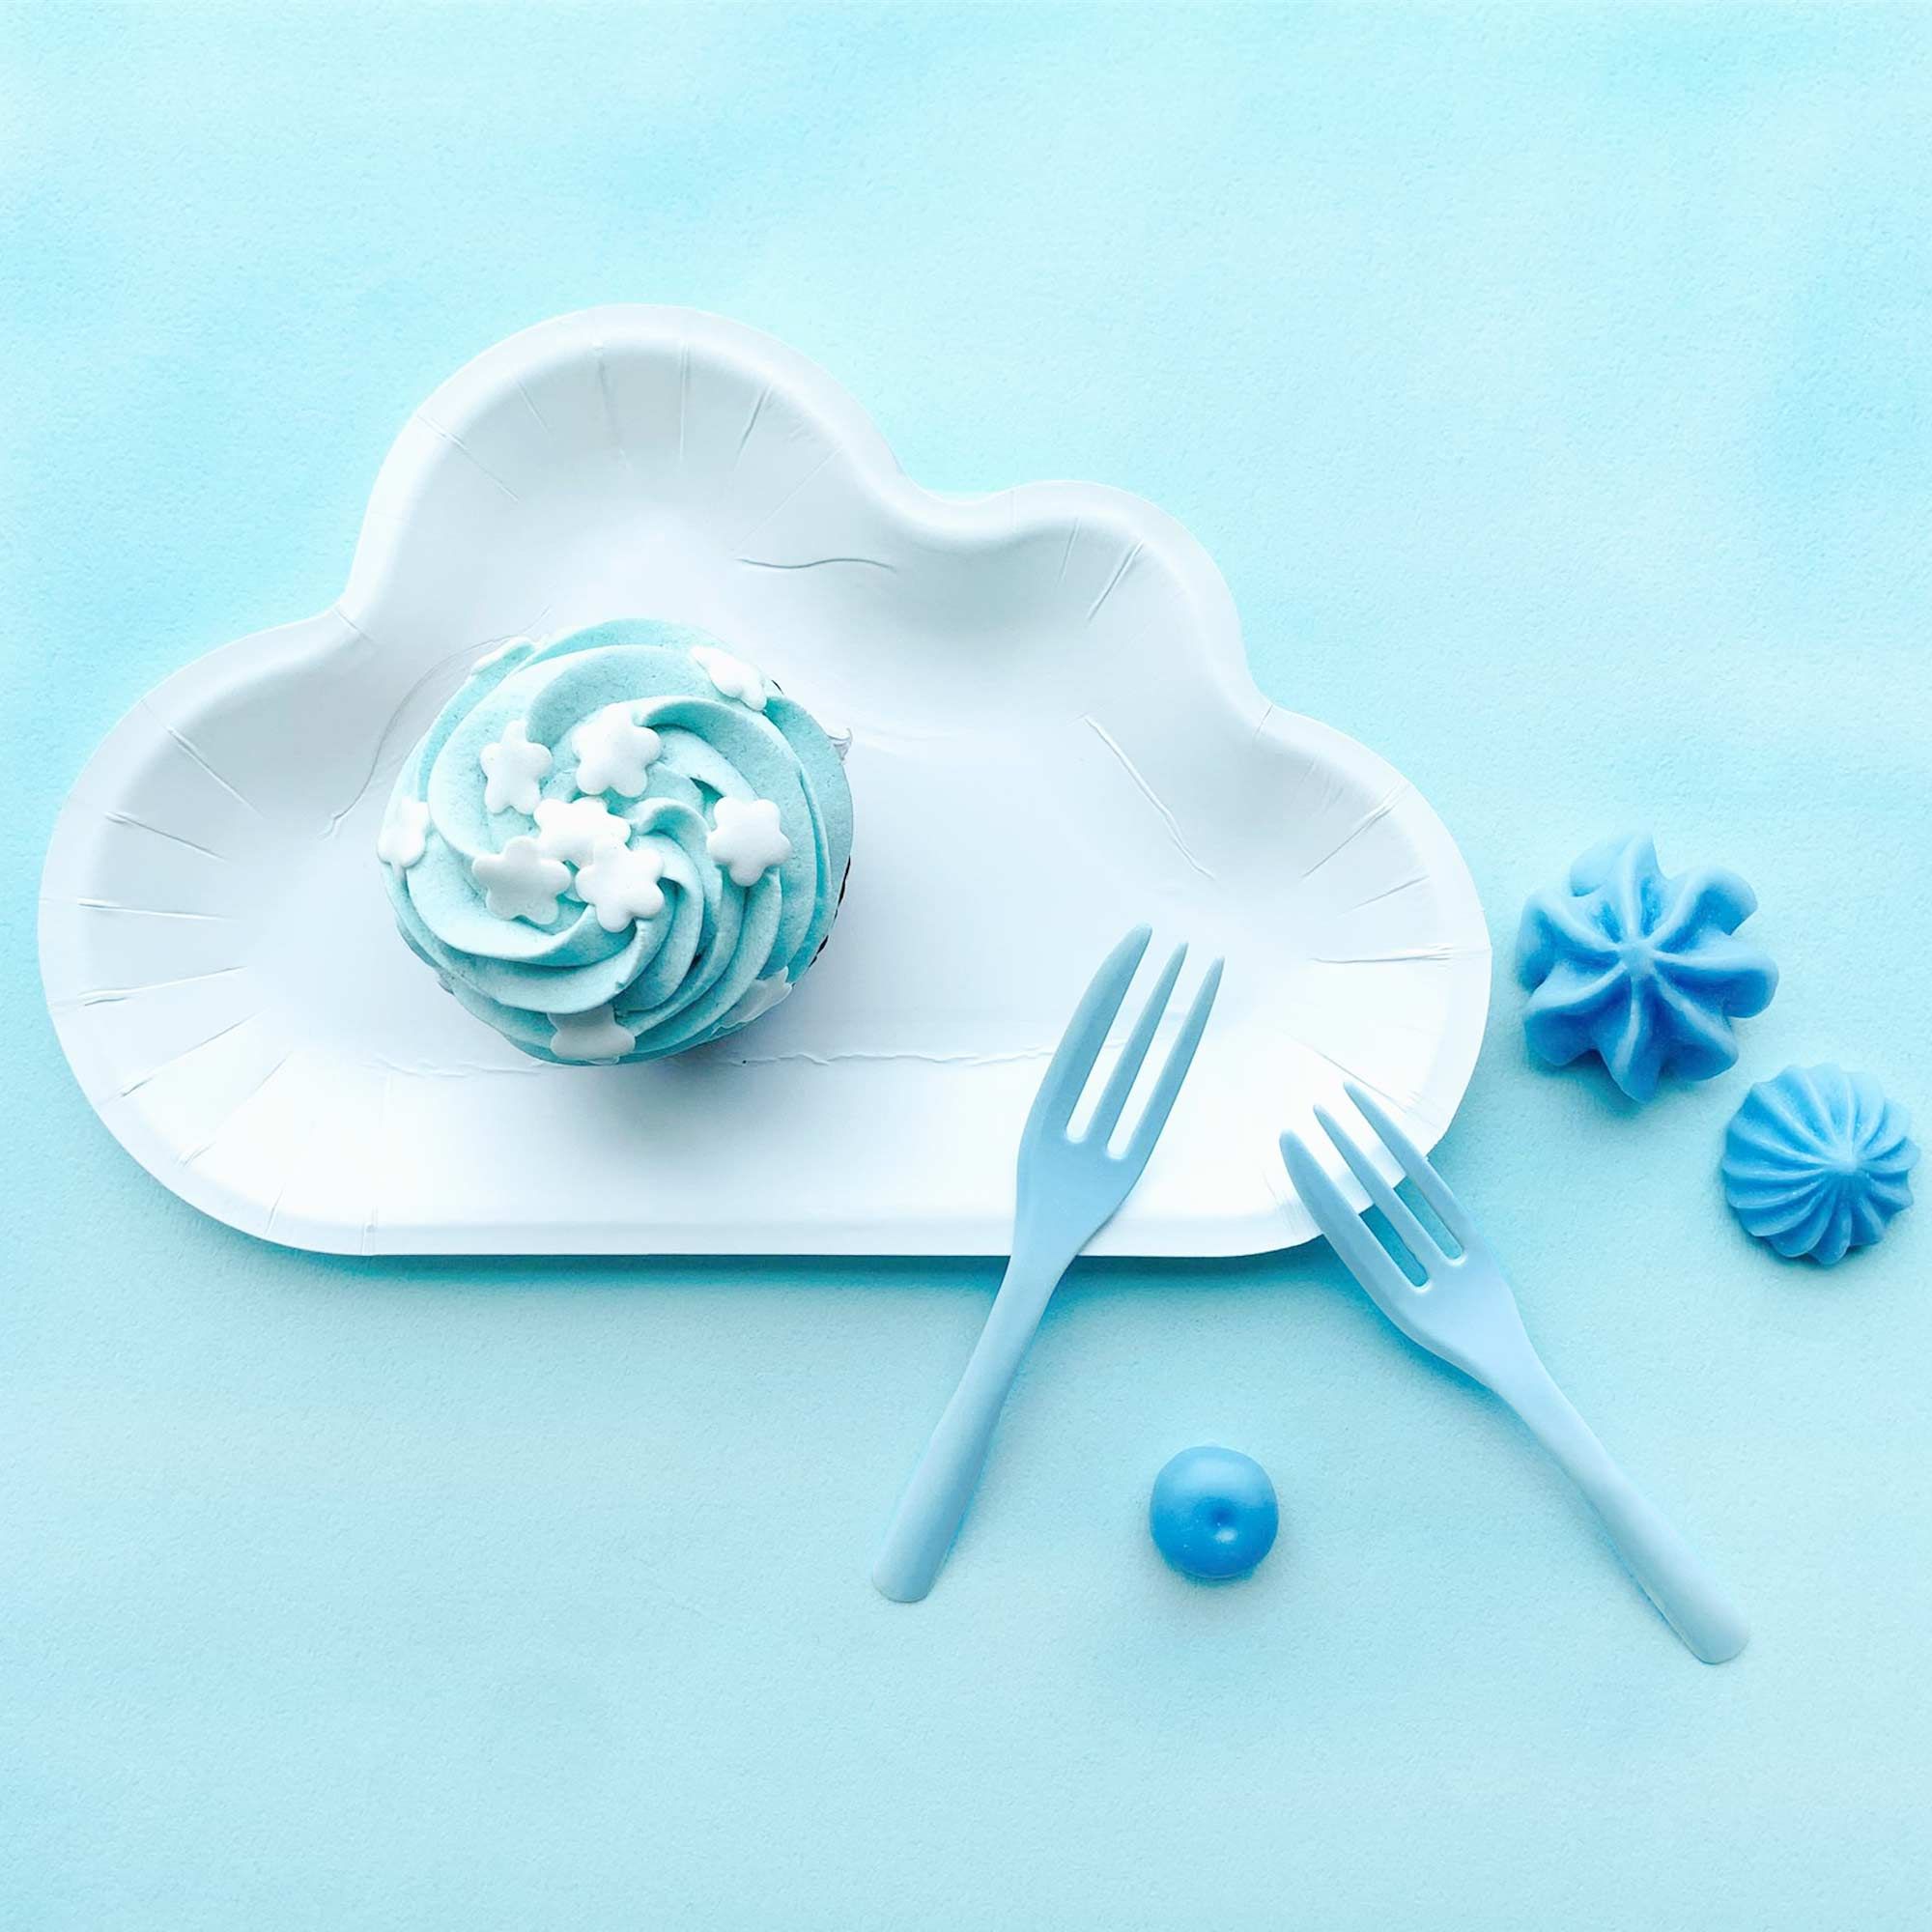 Piring berbentuk awan putih bersama garpu kek biru mencipta suasana yang mengingatkan kepada langit biru dengan awan yang lembut.